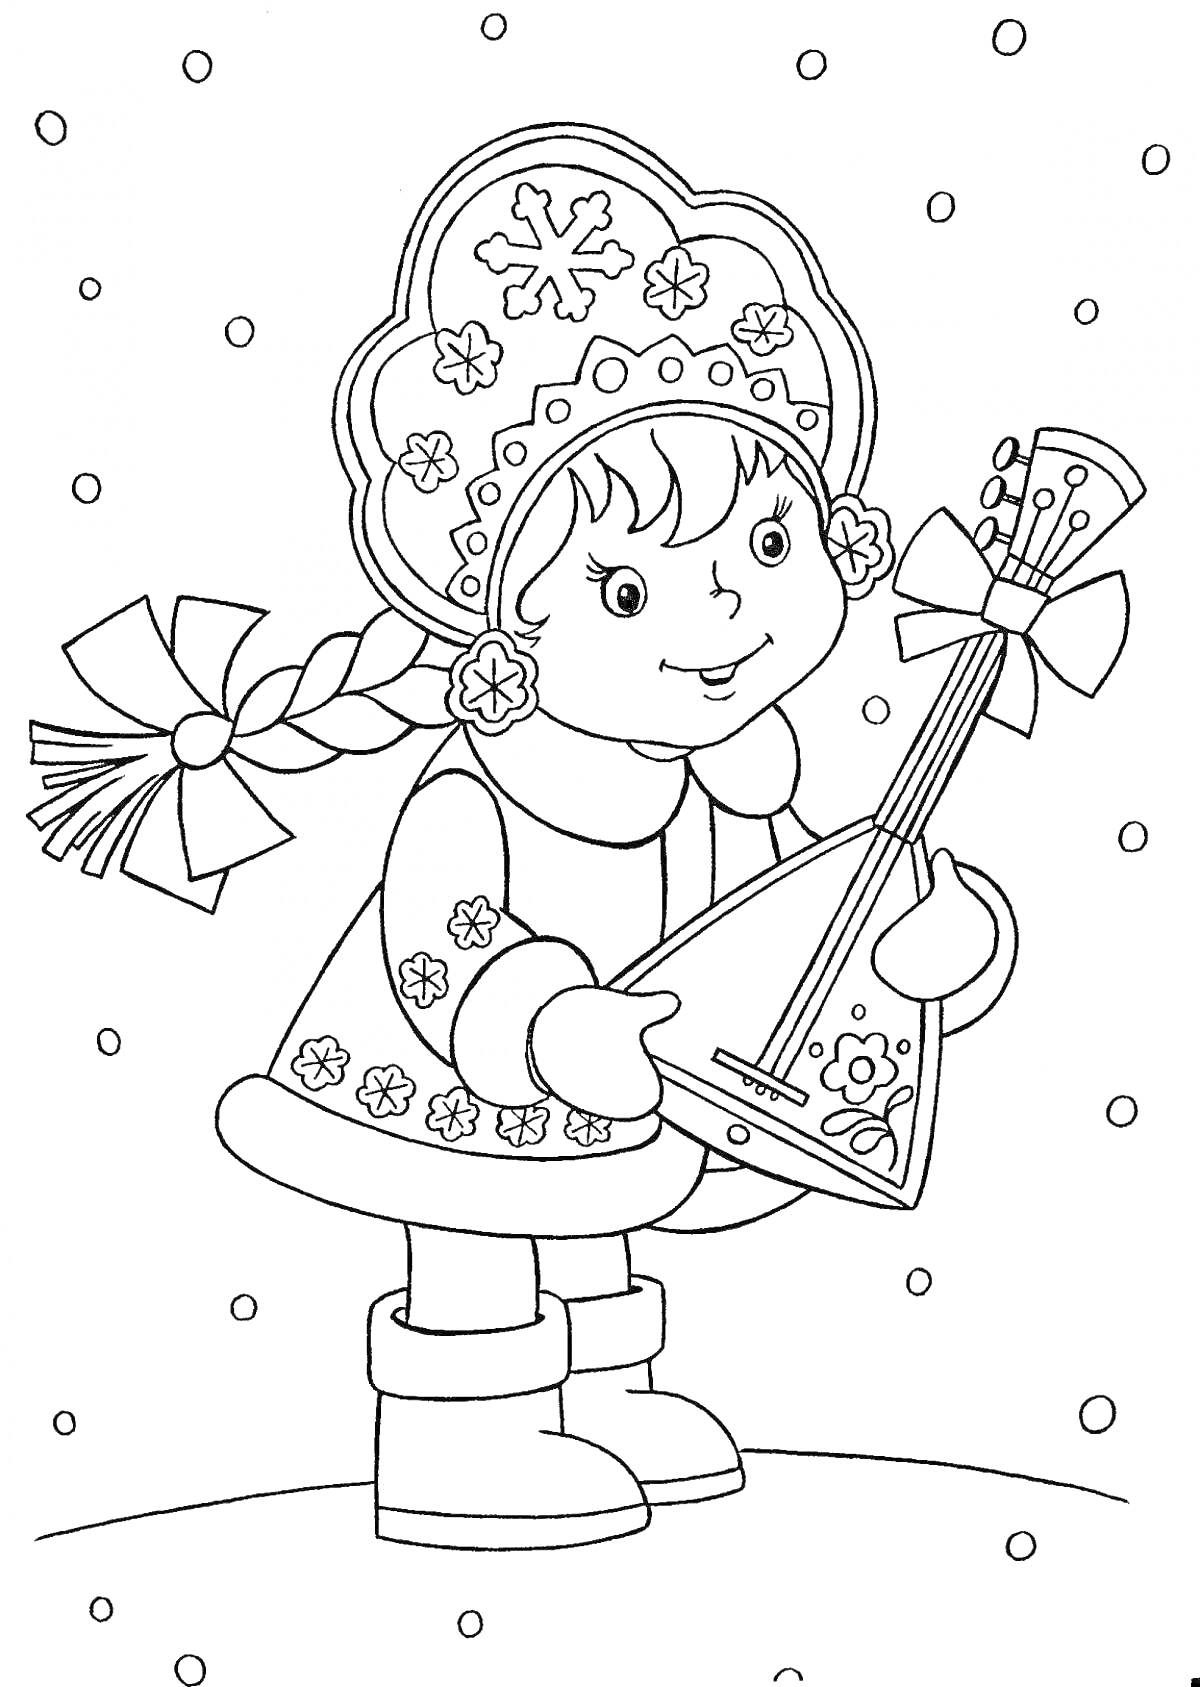 Раскраска Девочка в зимней одежде со снегом и балалайкой